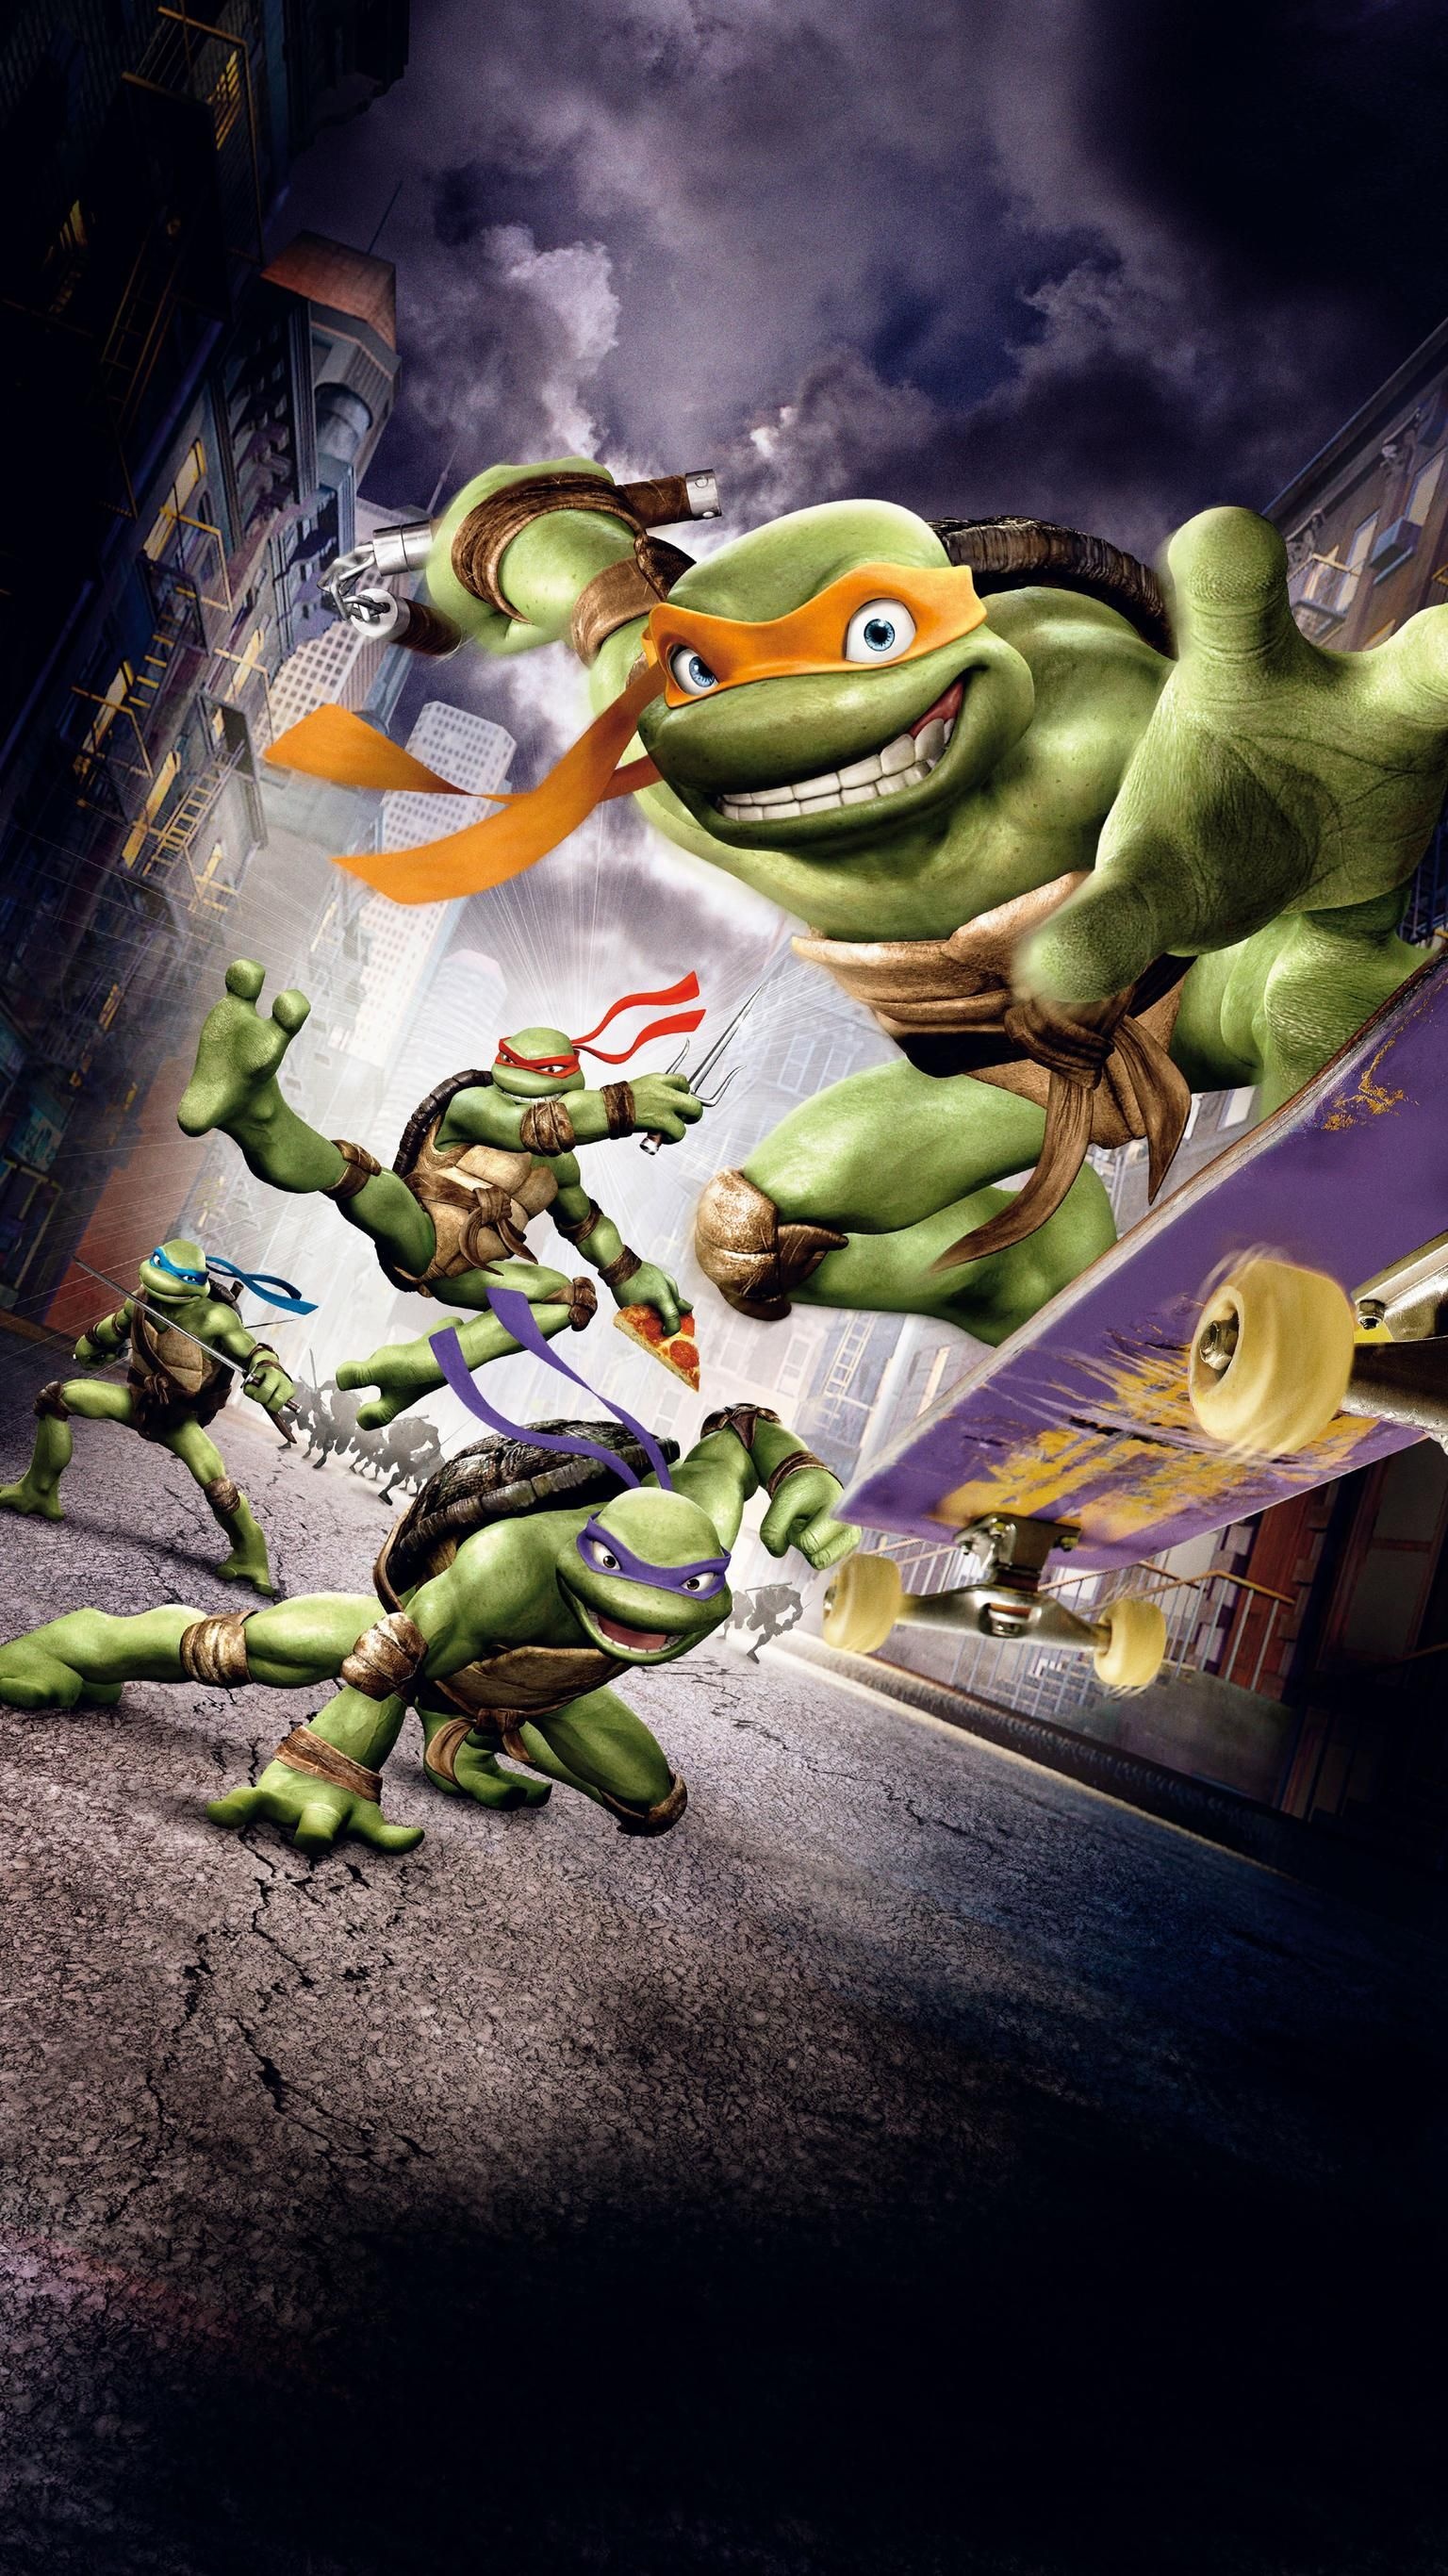 Mutant Ninja Turtles, Phone wallpaper, TMNT 2007, Ninja turtle artwork, 1540x2740 HD Phone